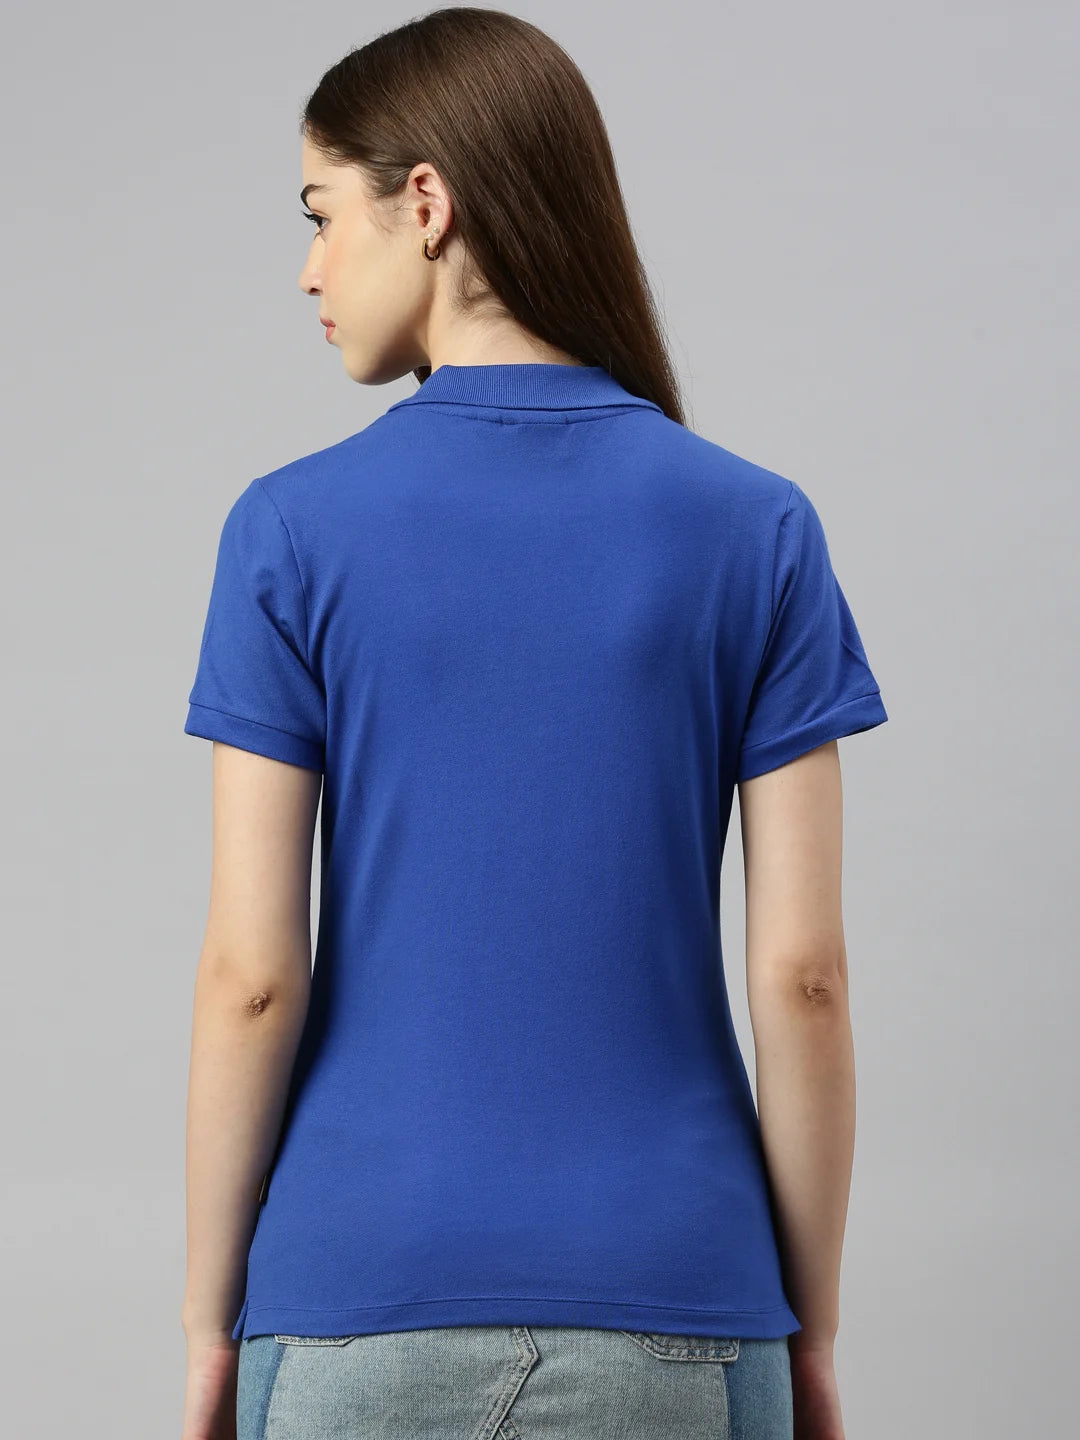 women-stacy-bio-fairtrade-polo-shirt-brilliant-hues-ocean-back